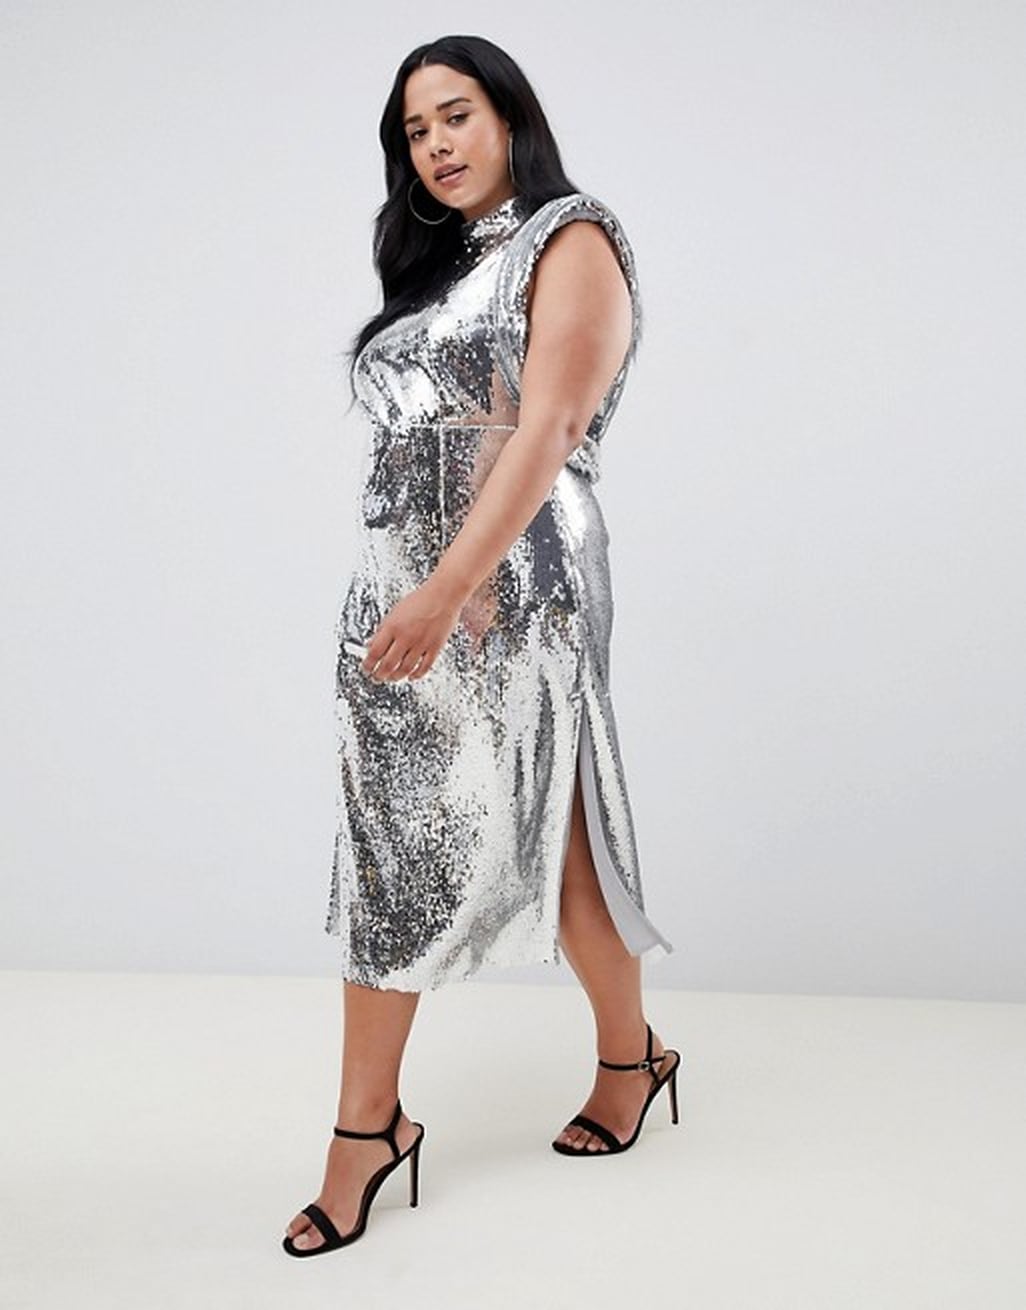 Priyanka Chopra Silver Dress on Ellen Jan. 2019 | POPSUGAR Fashion